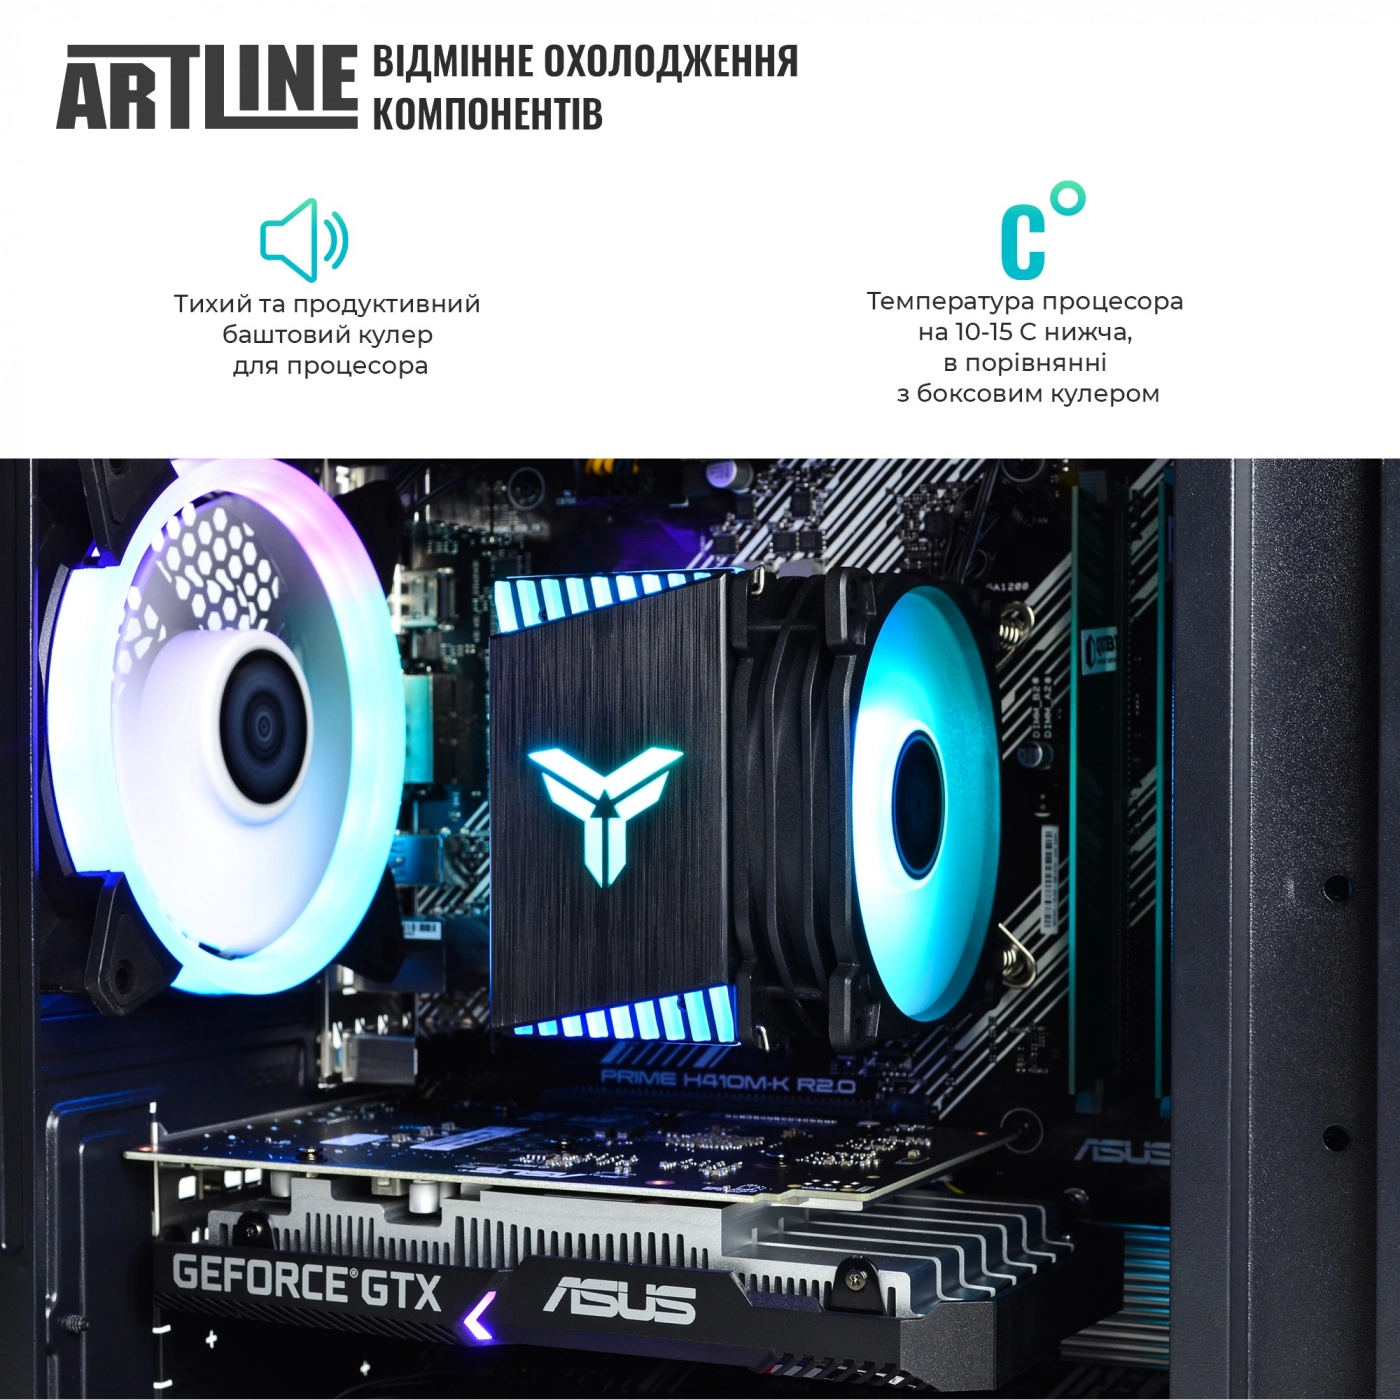 Купить Компьютер ARTLINE Gaming X43v30 - фото 3